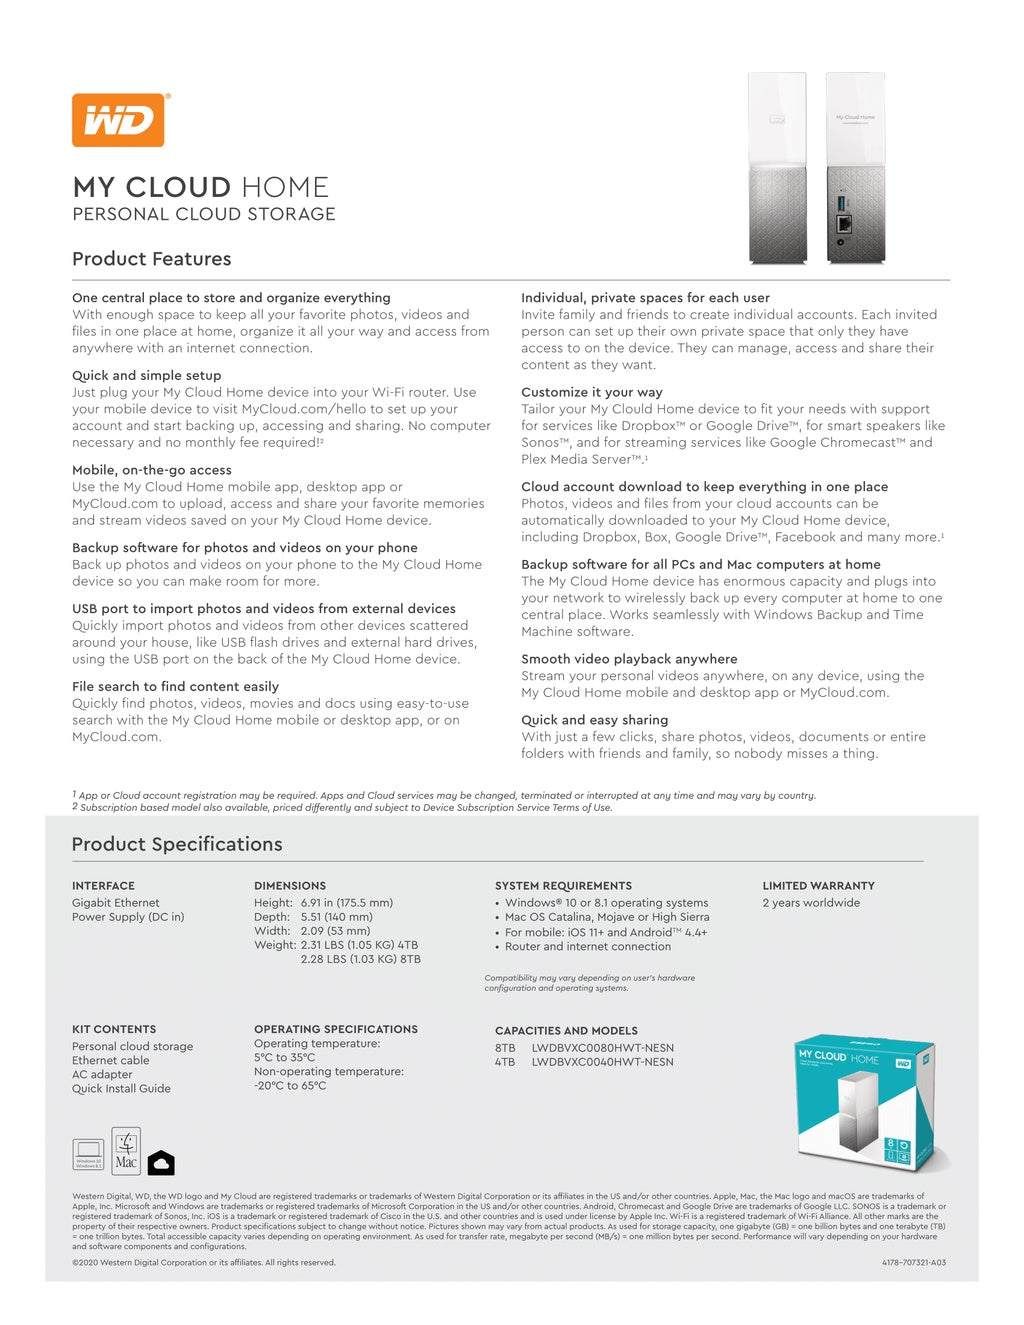 Western Digital WD My Cloud Home NAS Personal Cloud Storage